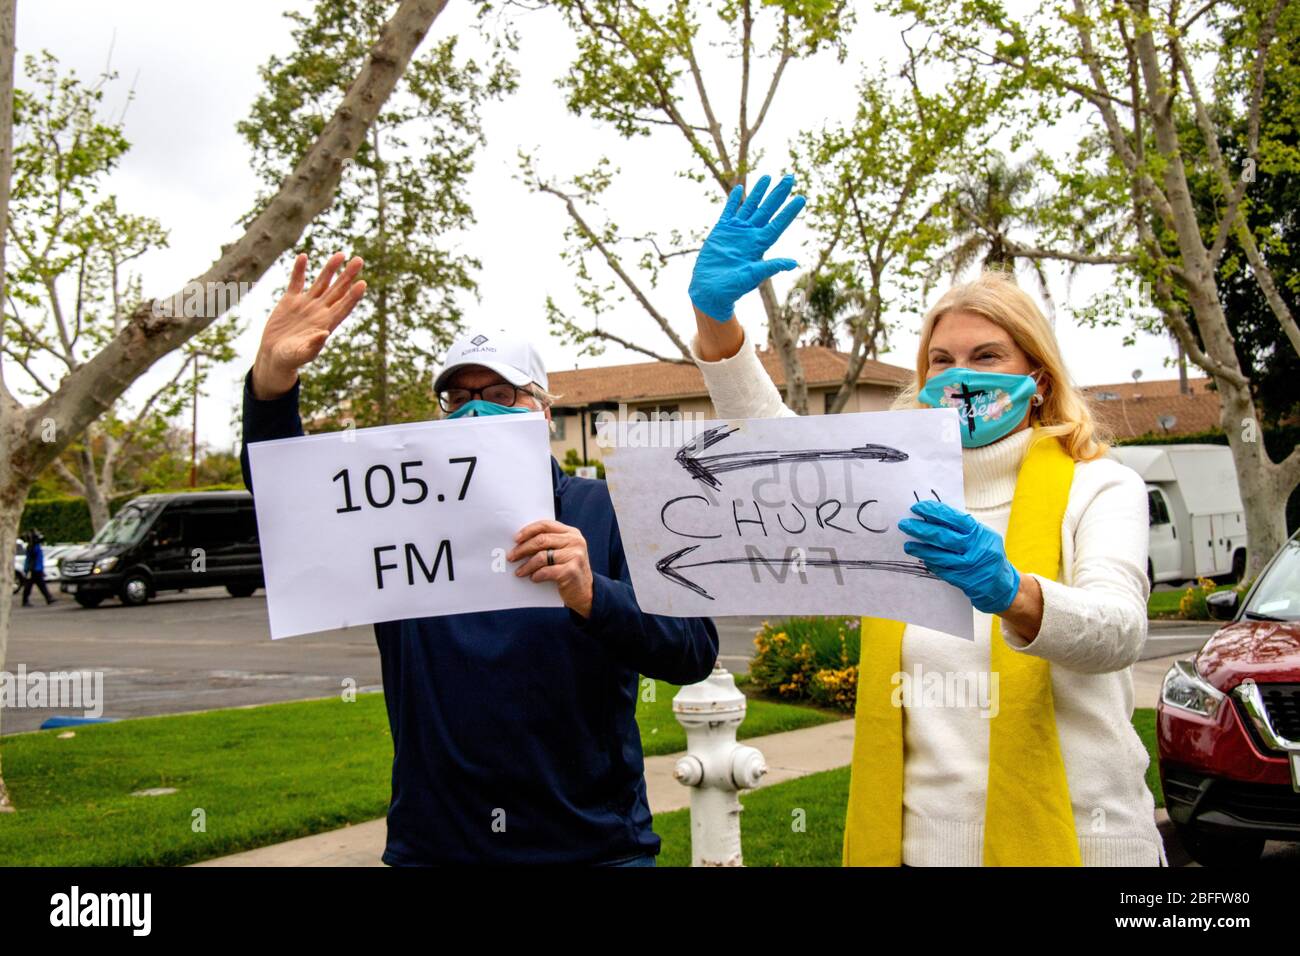 Die Begrüßer bei einem Autofahren Ostern Service in einem Santa Ana, CA, Büropark tragen Sicherheitsmasken wegen des Ausbruchs des Coronavirus oder COVID-19. Notieren Sie sich die Schilder, die den Ort und den Radiosender angeben, an dem die Predigt zu hören ist. Stockfoto